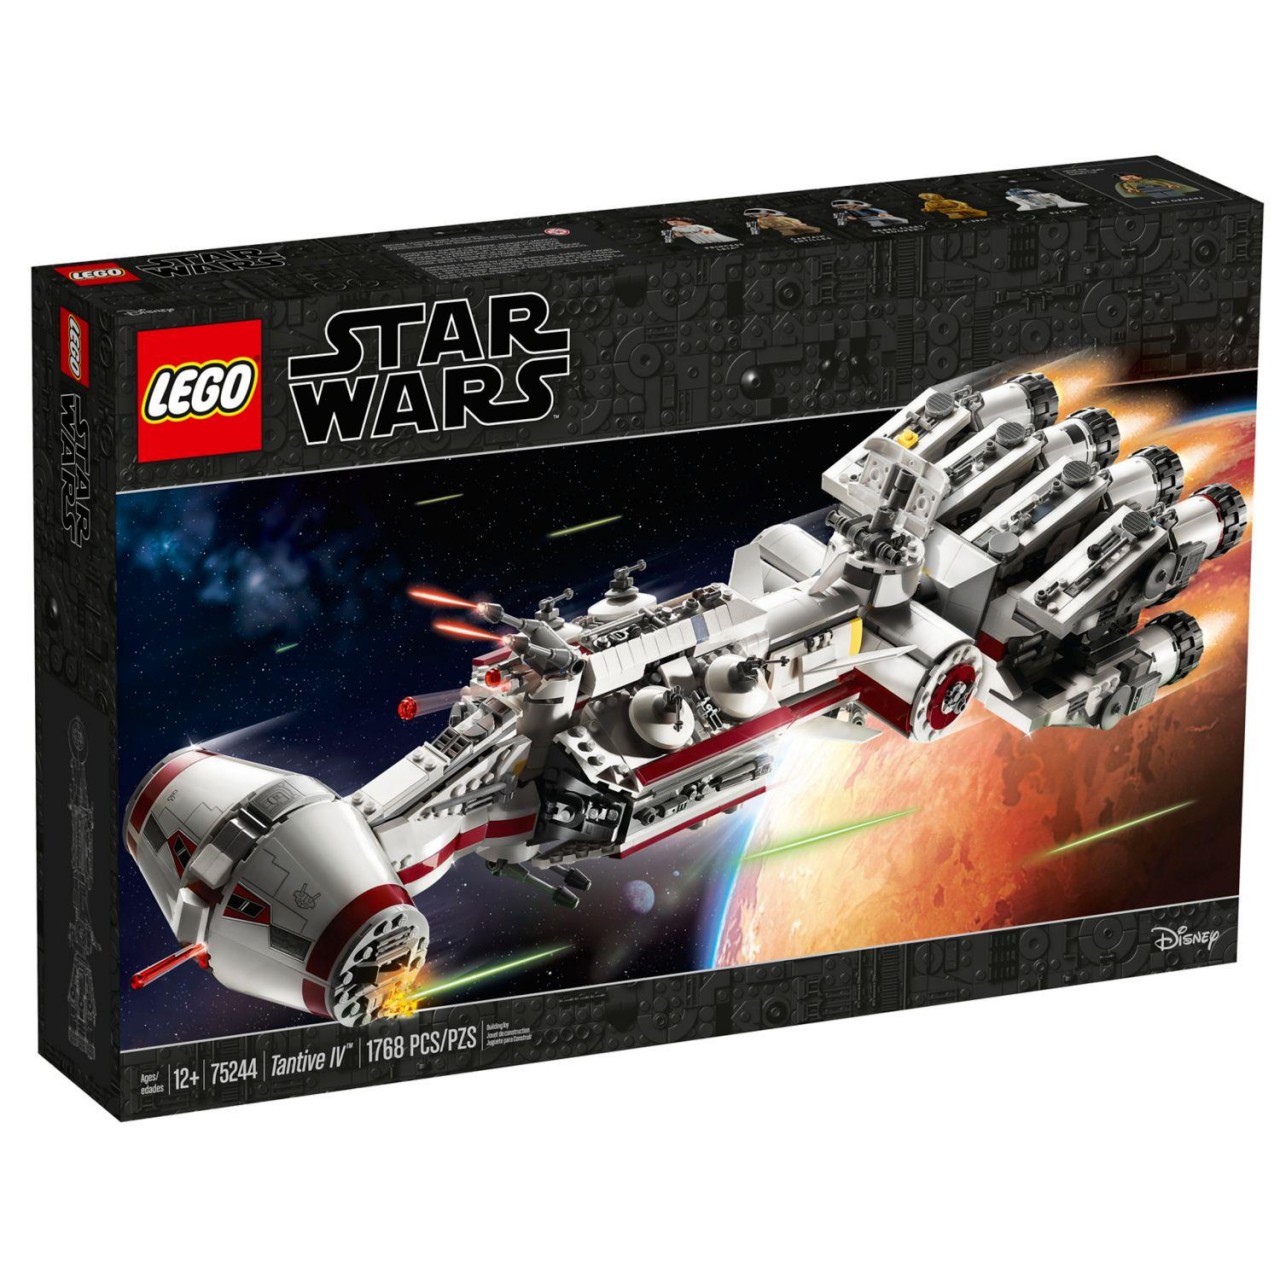 LEGO STAR WARS 75244 Eine Hoffnung Tantive IV